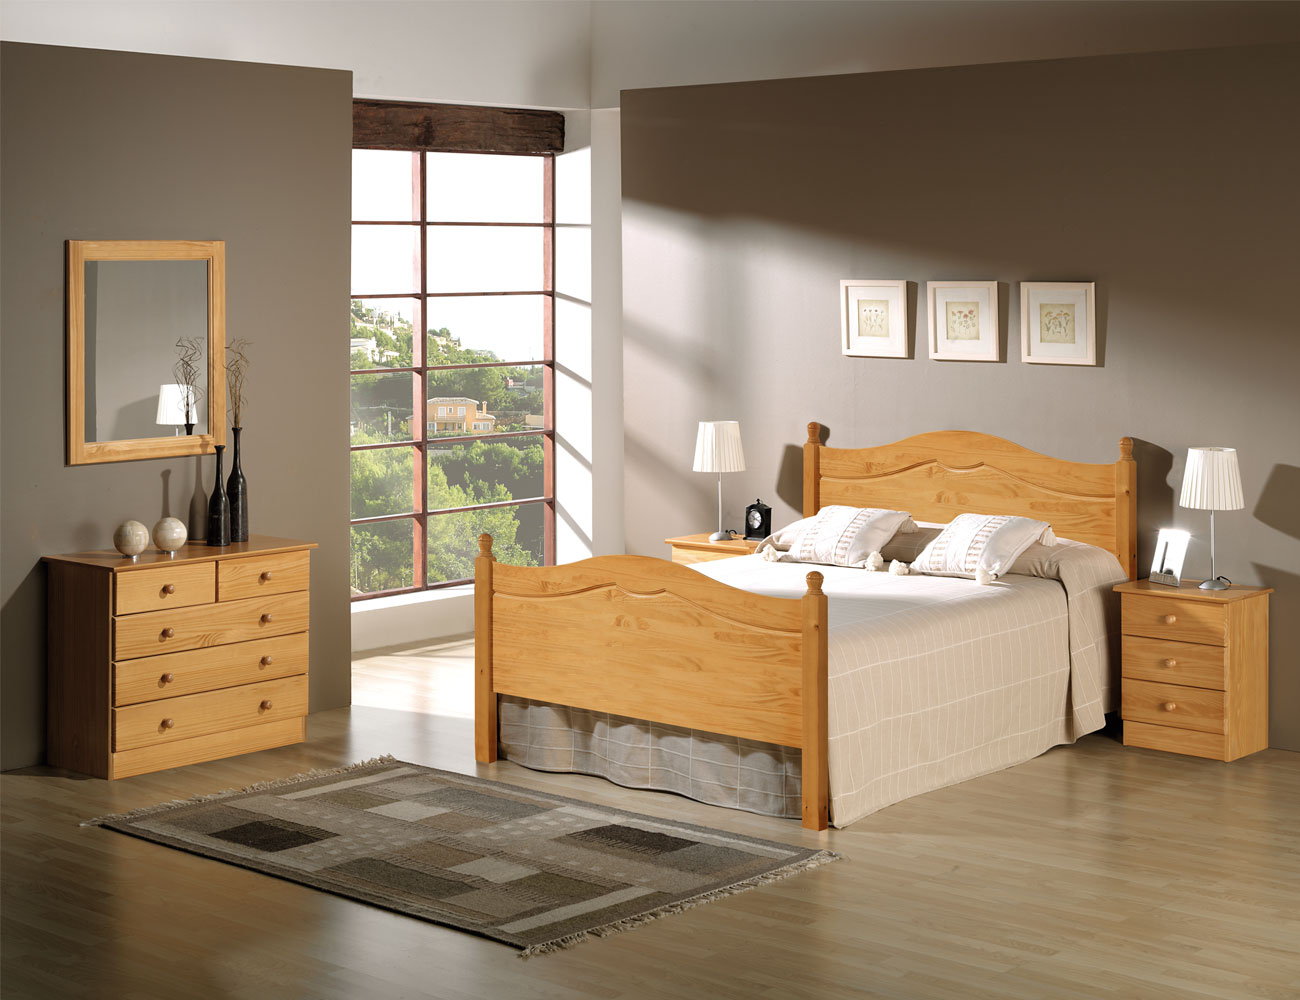 Cama litera dormitorio juvenil en madera color miel con somieres de